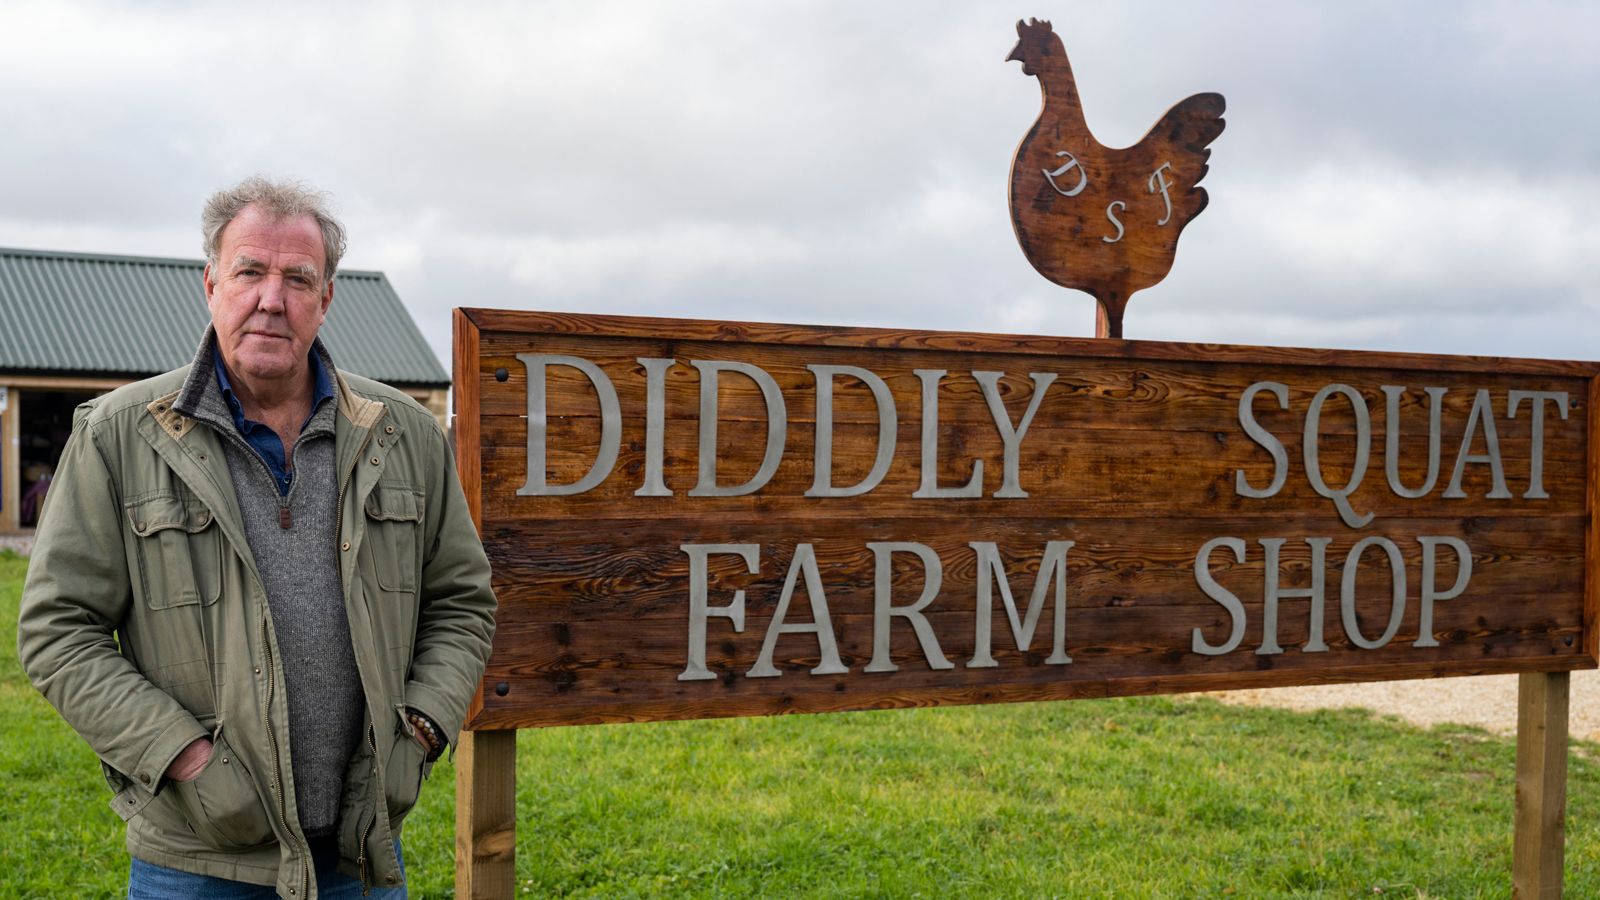 Jeremy Clarkson abandonne son offre pour acheter un restaurant à la ferme de squats de Diddley après avoir planifié une dispute avec le conseil |  Nouvelles du Royaume-Uni